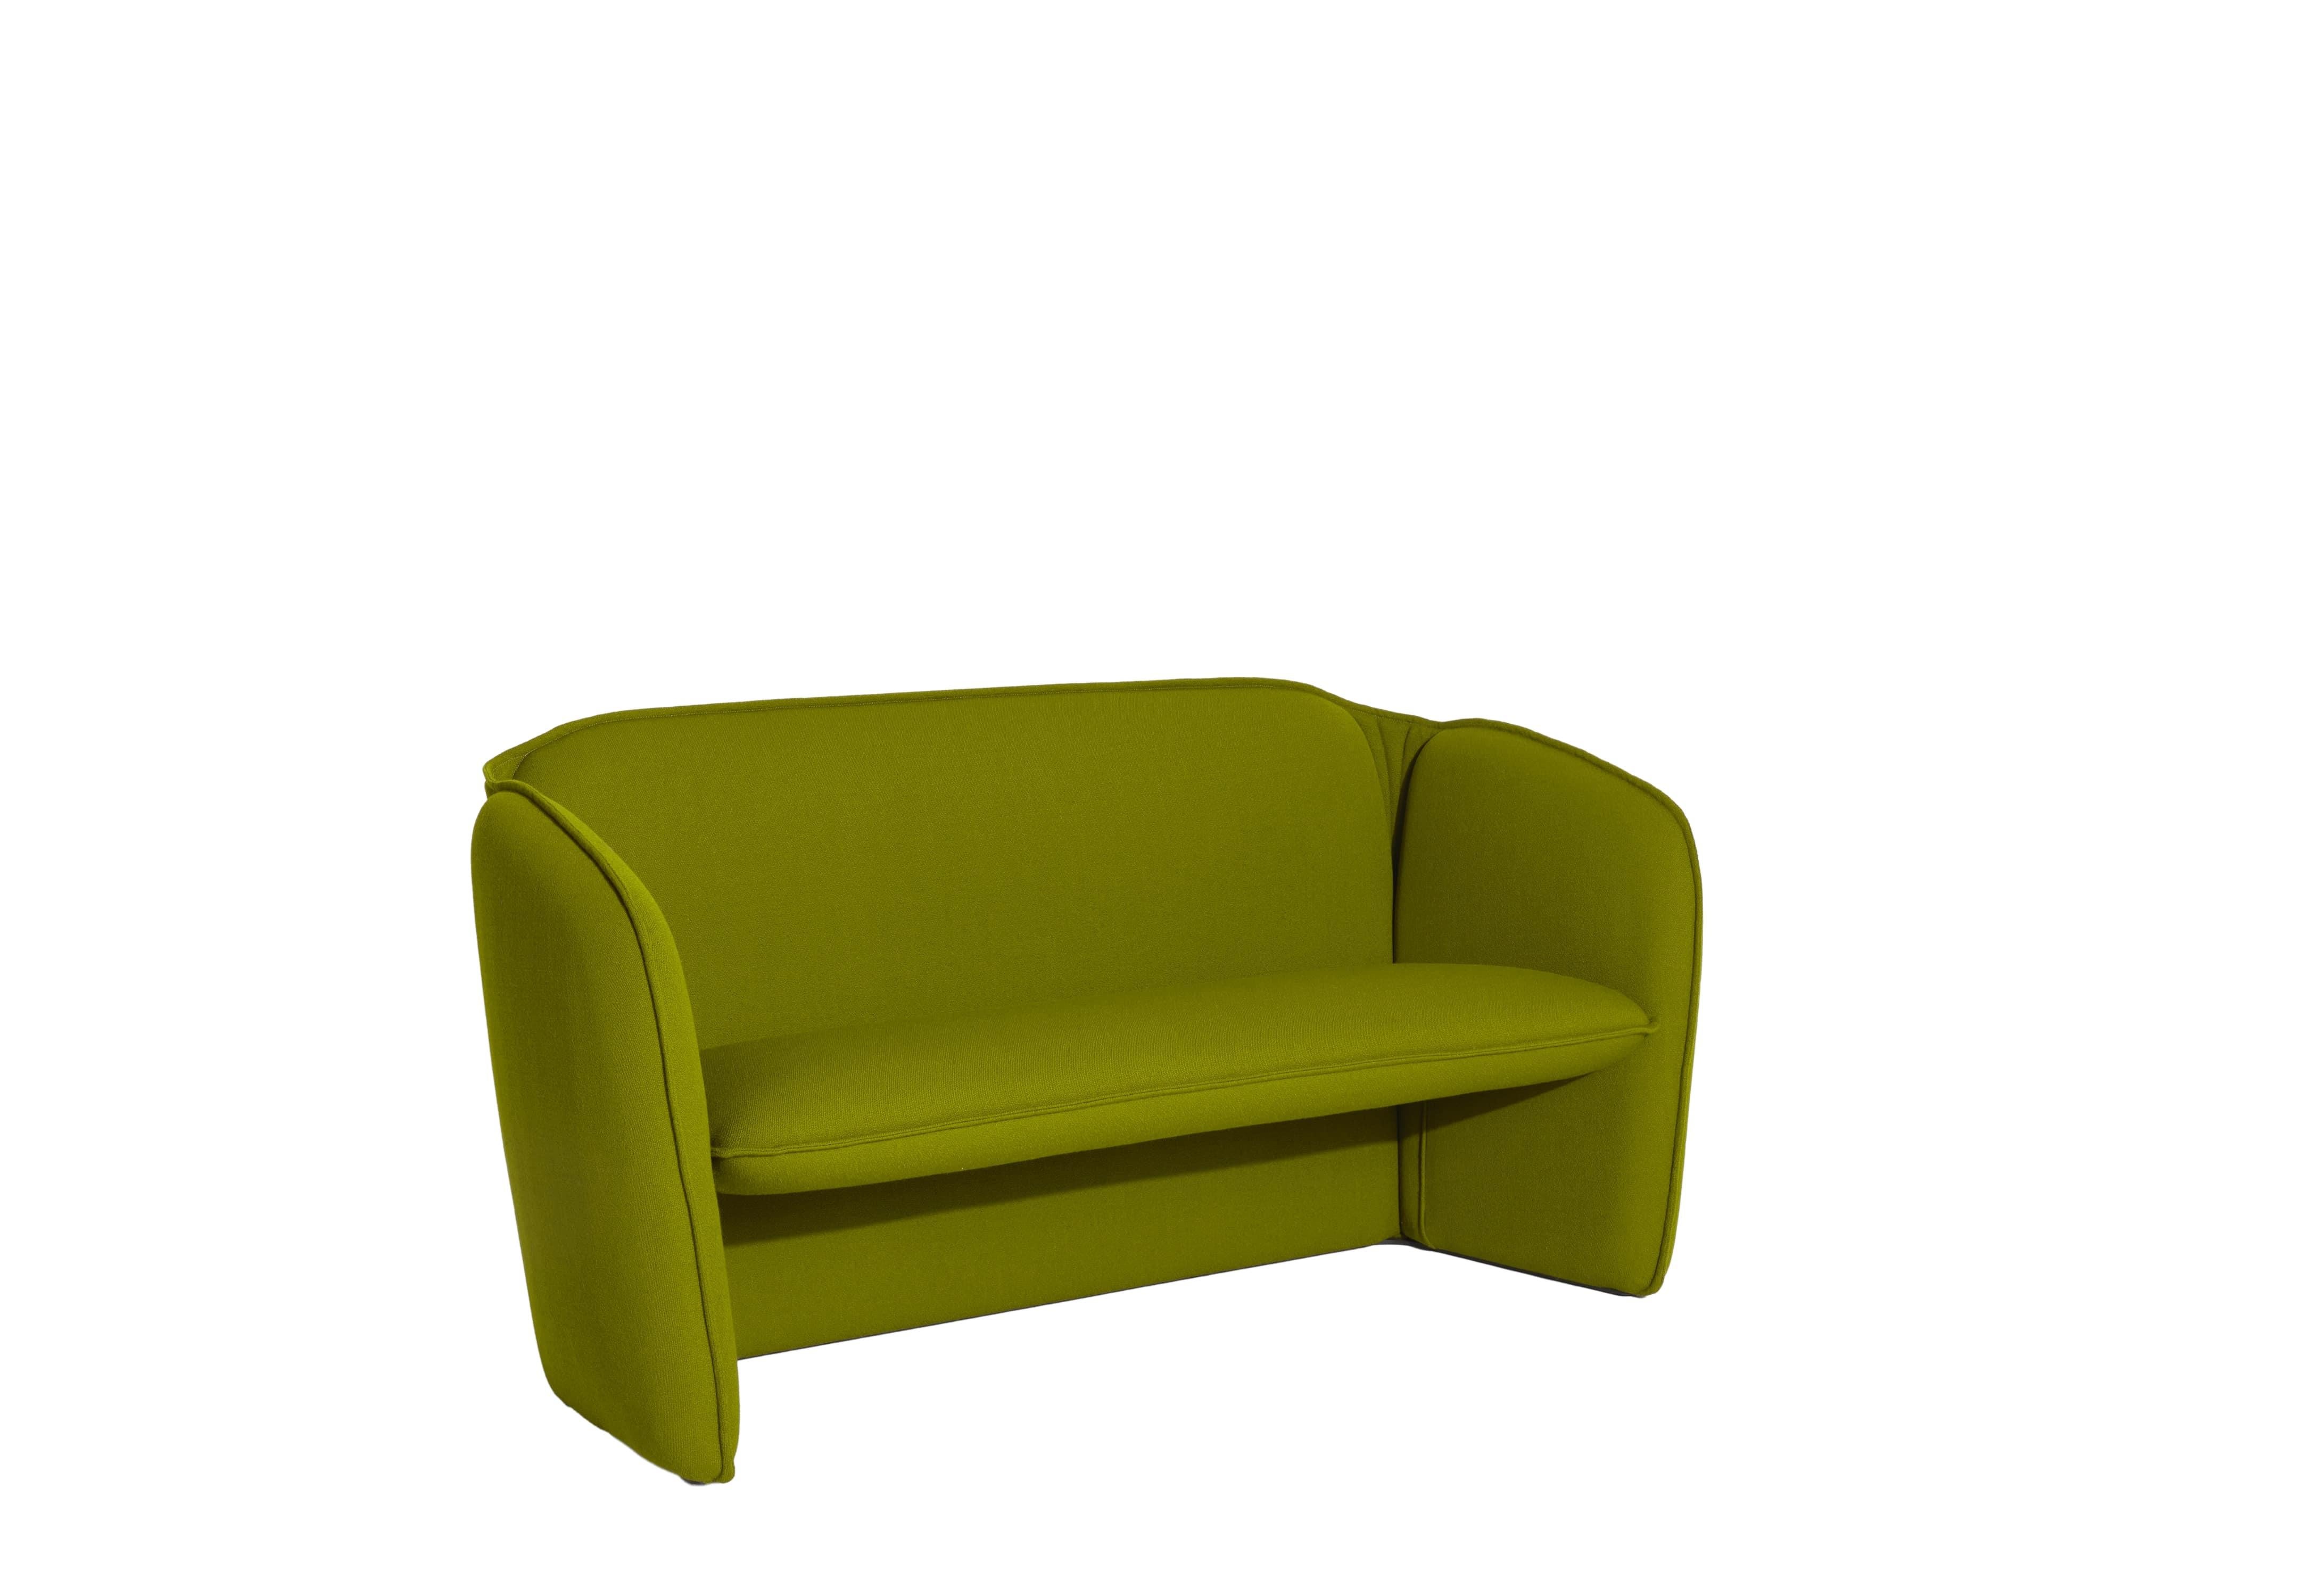 Petite Friture Lily Sofa in Olivgrün von Färg & Blanche, 2022

Eine umfassende Kollektion, bestehend aus einem Sofa und einem Sessel. Mit tadellosen, prägnanten Proportionen und glatten, organischen Konturen, die ein gastfreundliches Gefühl